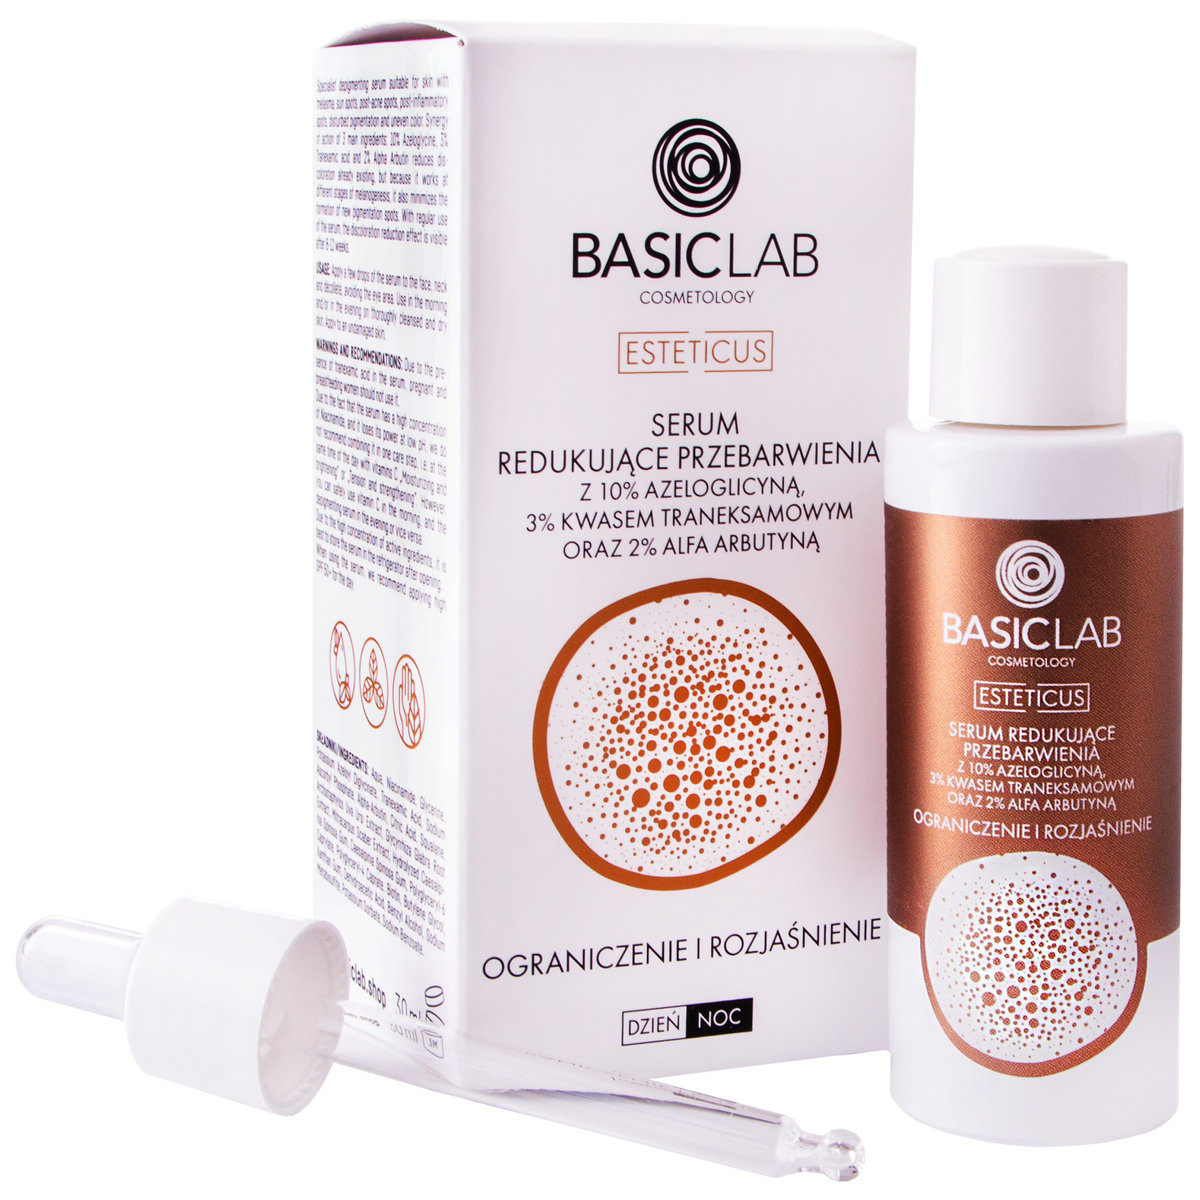 Basiclab Basiclab Serum Redukujące Przebarwienia Organicznie i Rozjaśnienie 30 ml AEE6-98755